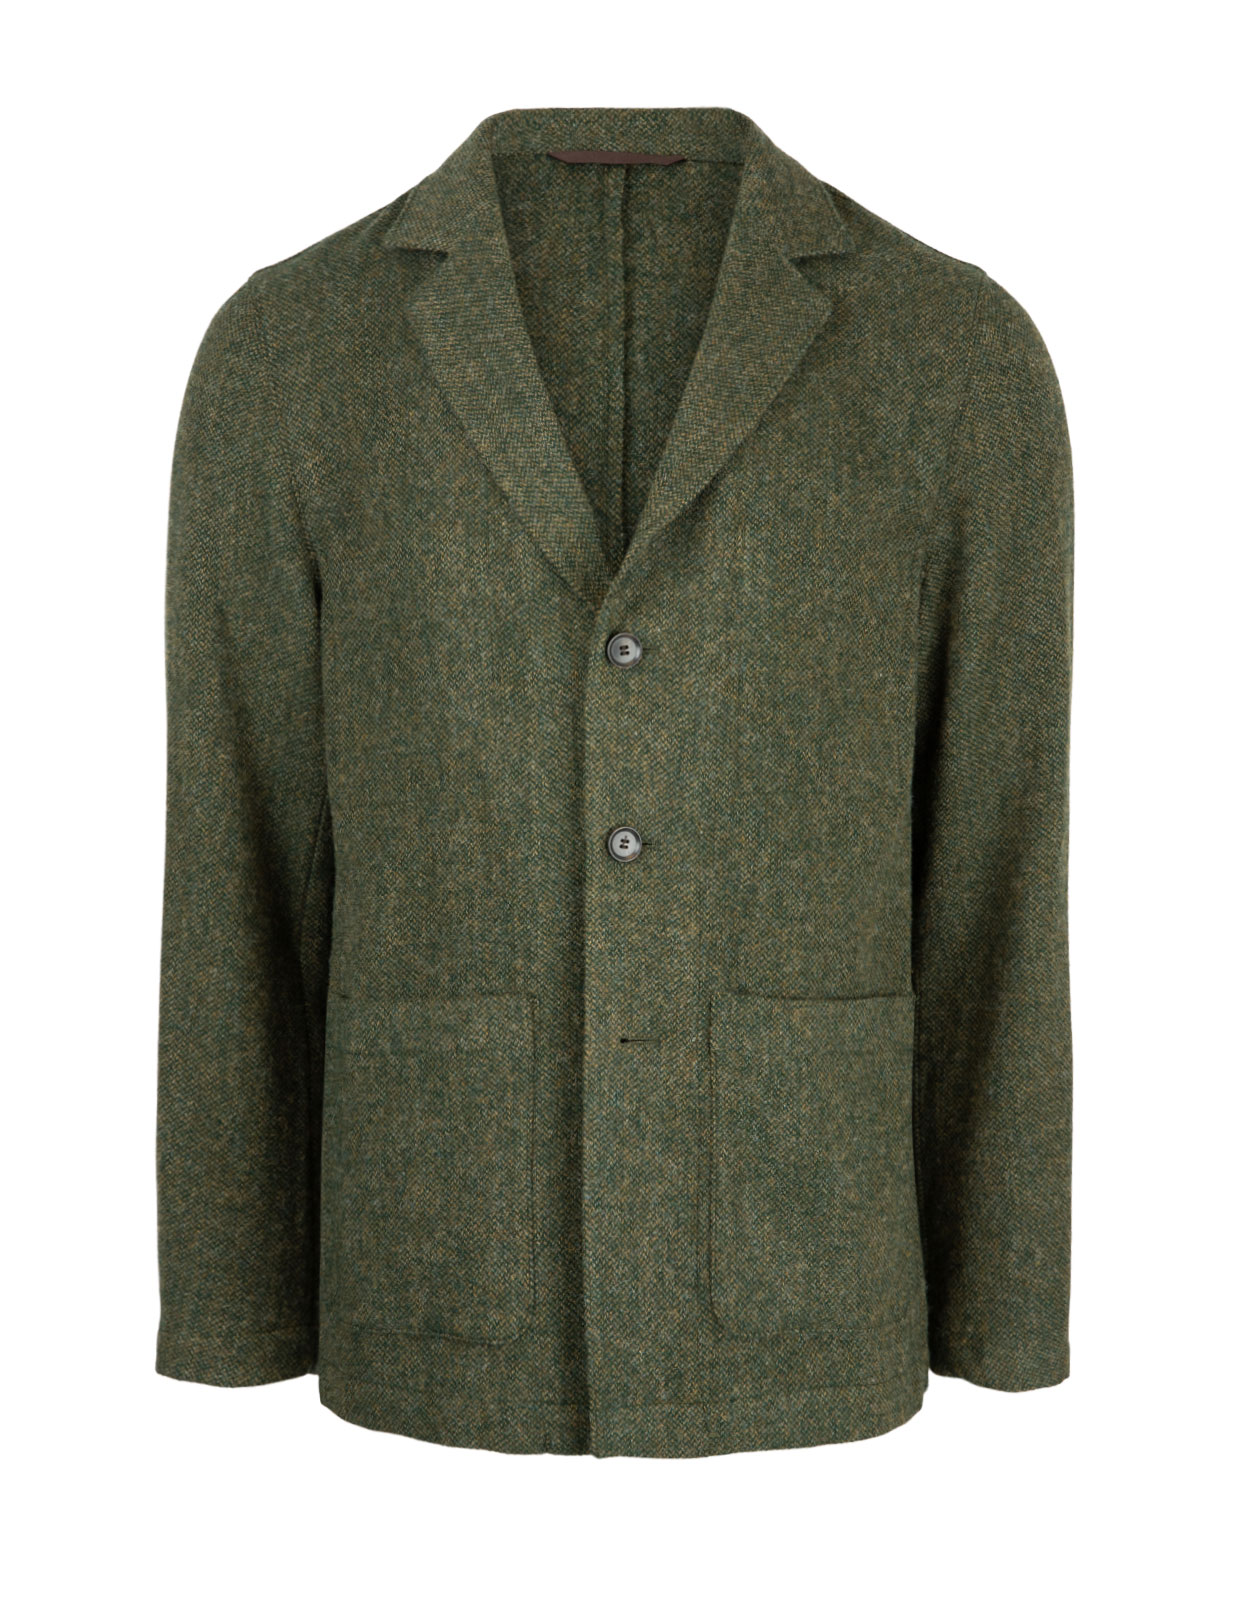 Hector Shirt Jacket Tweed Olive Green